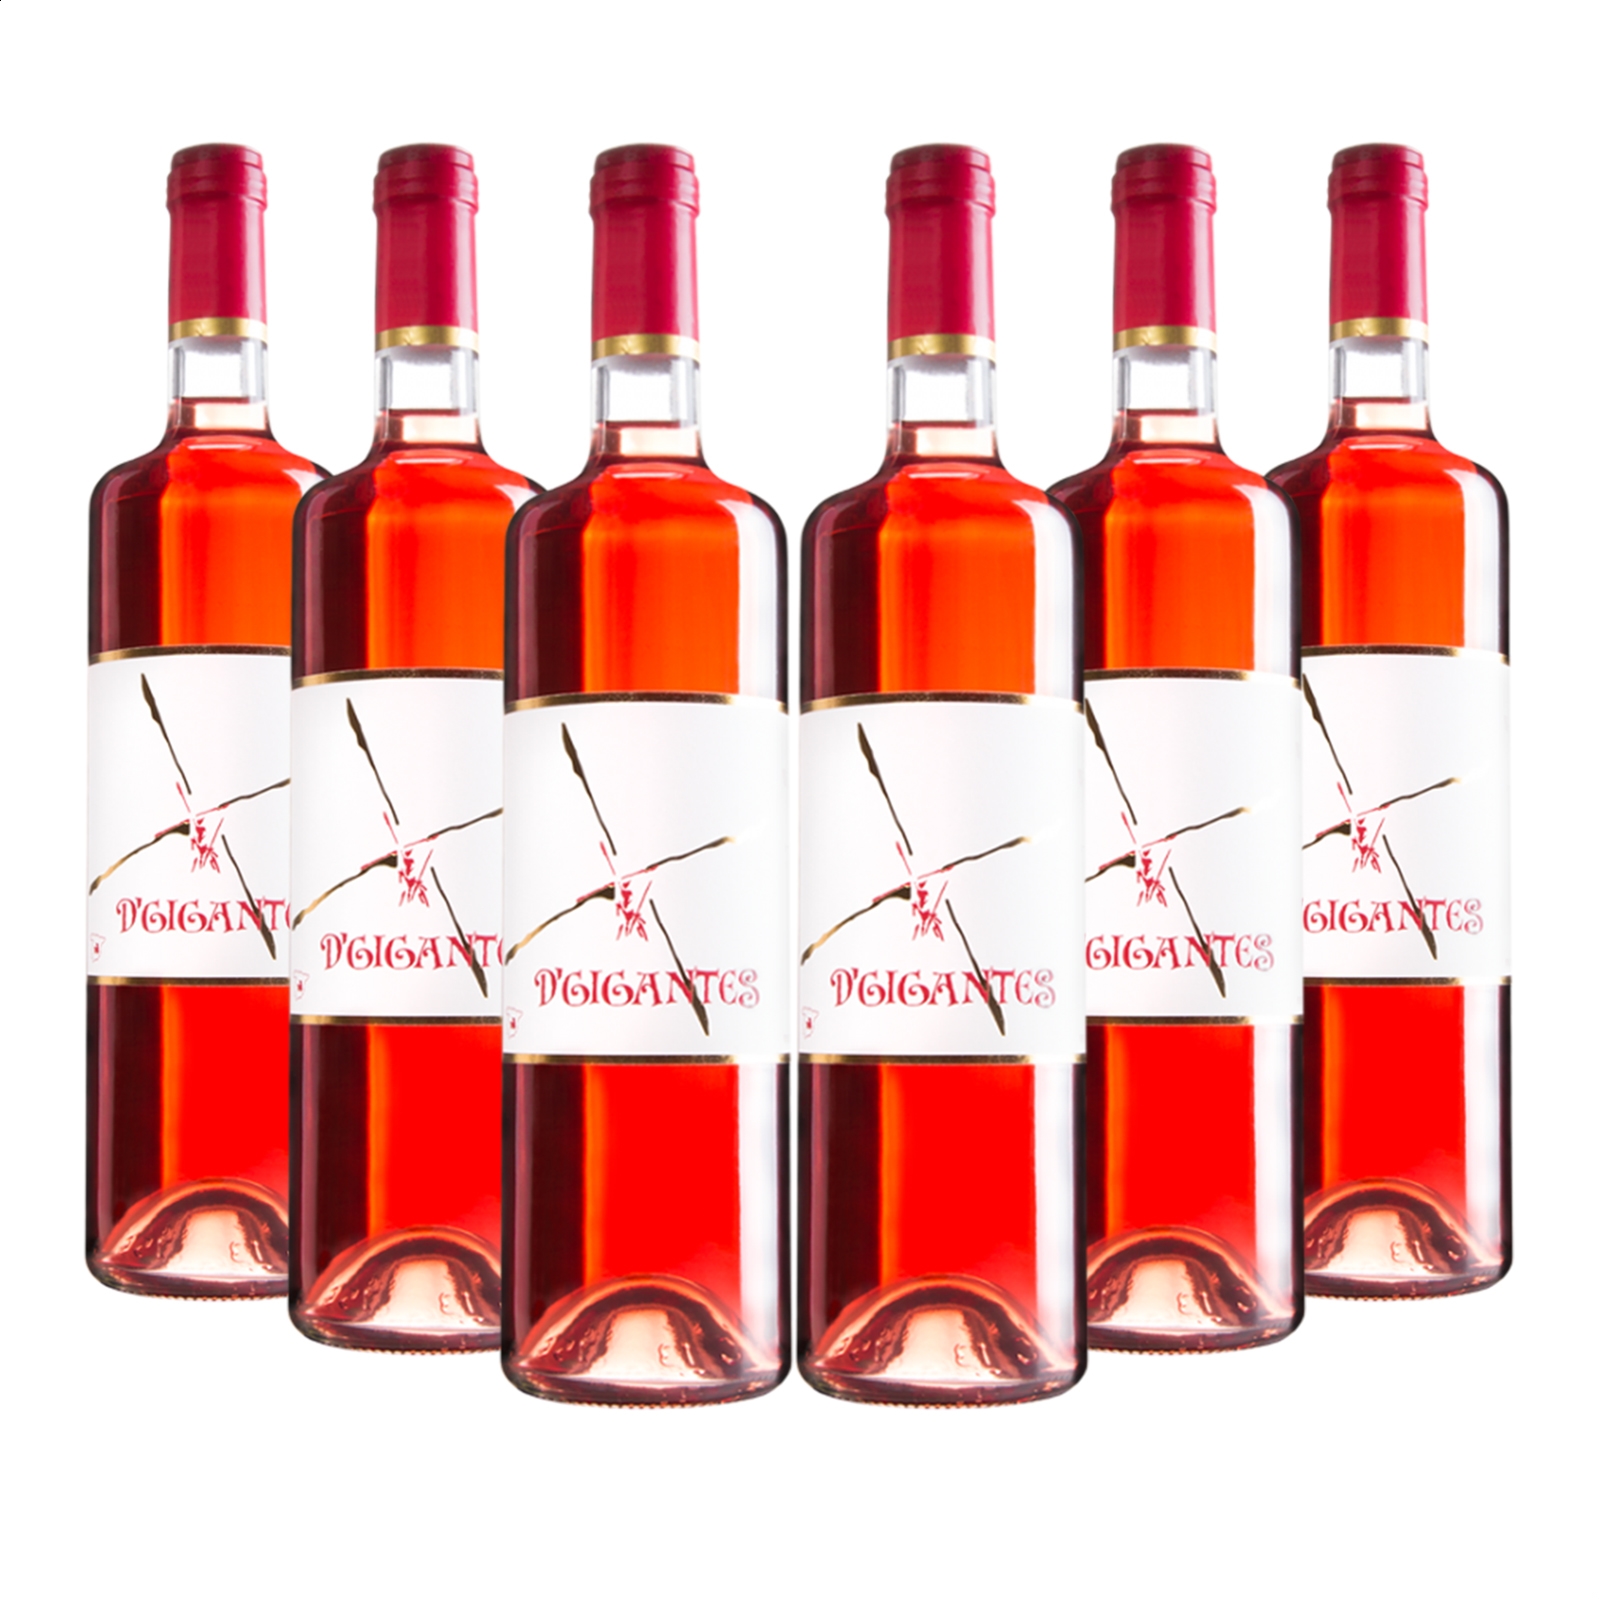 Vinícola del Carmen - D'Gigantes vino rosado IGP Vino de la Tierra de Castilla 75cl, 6uds